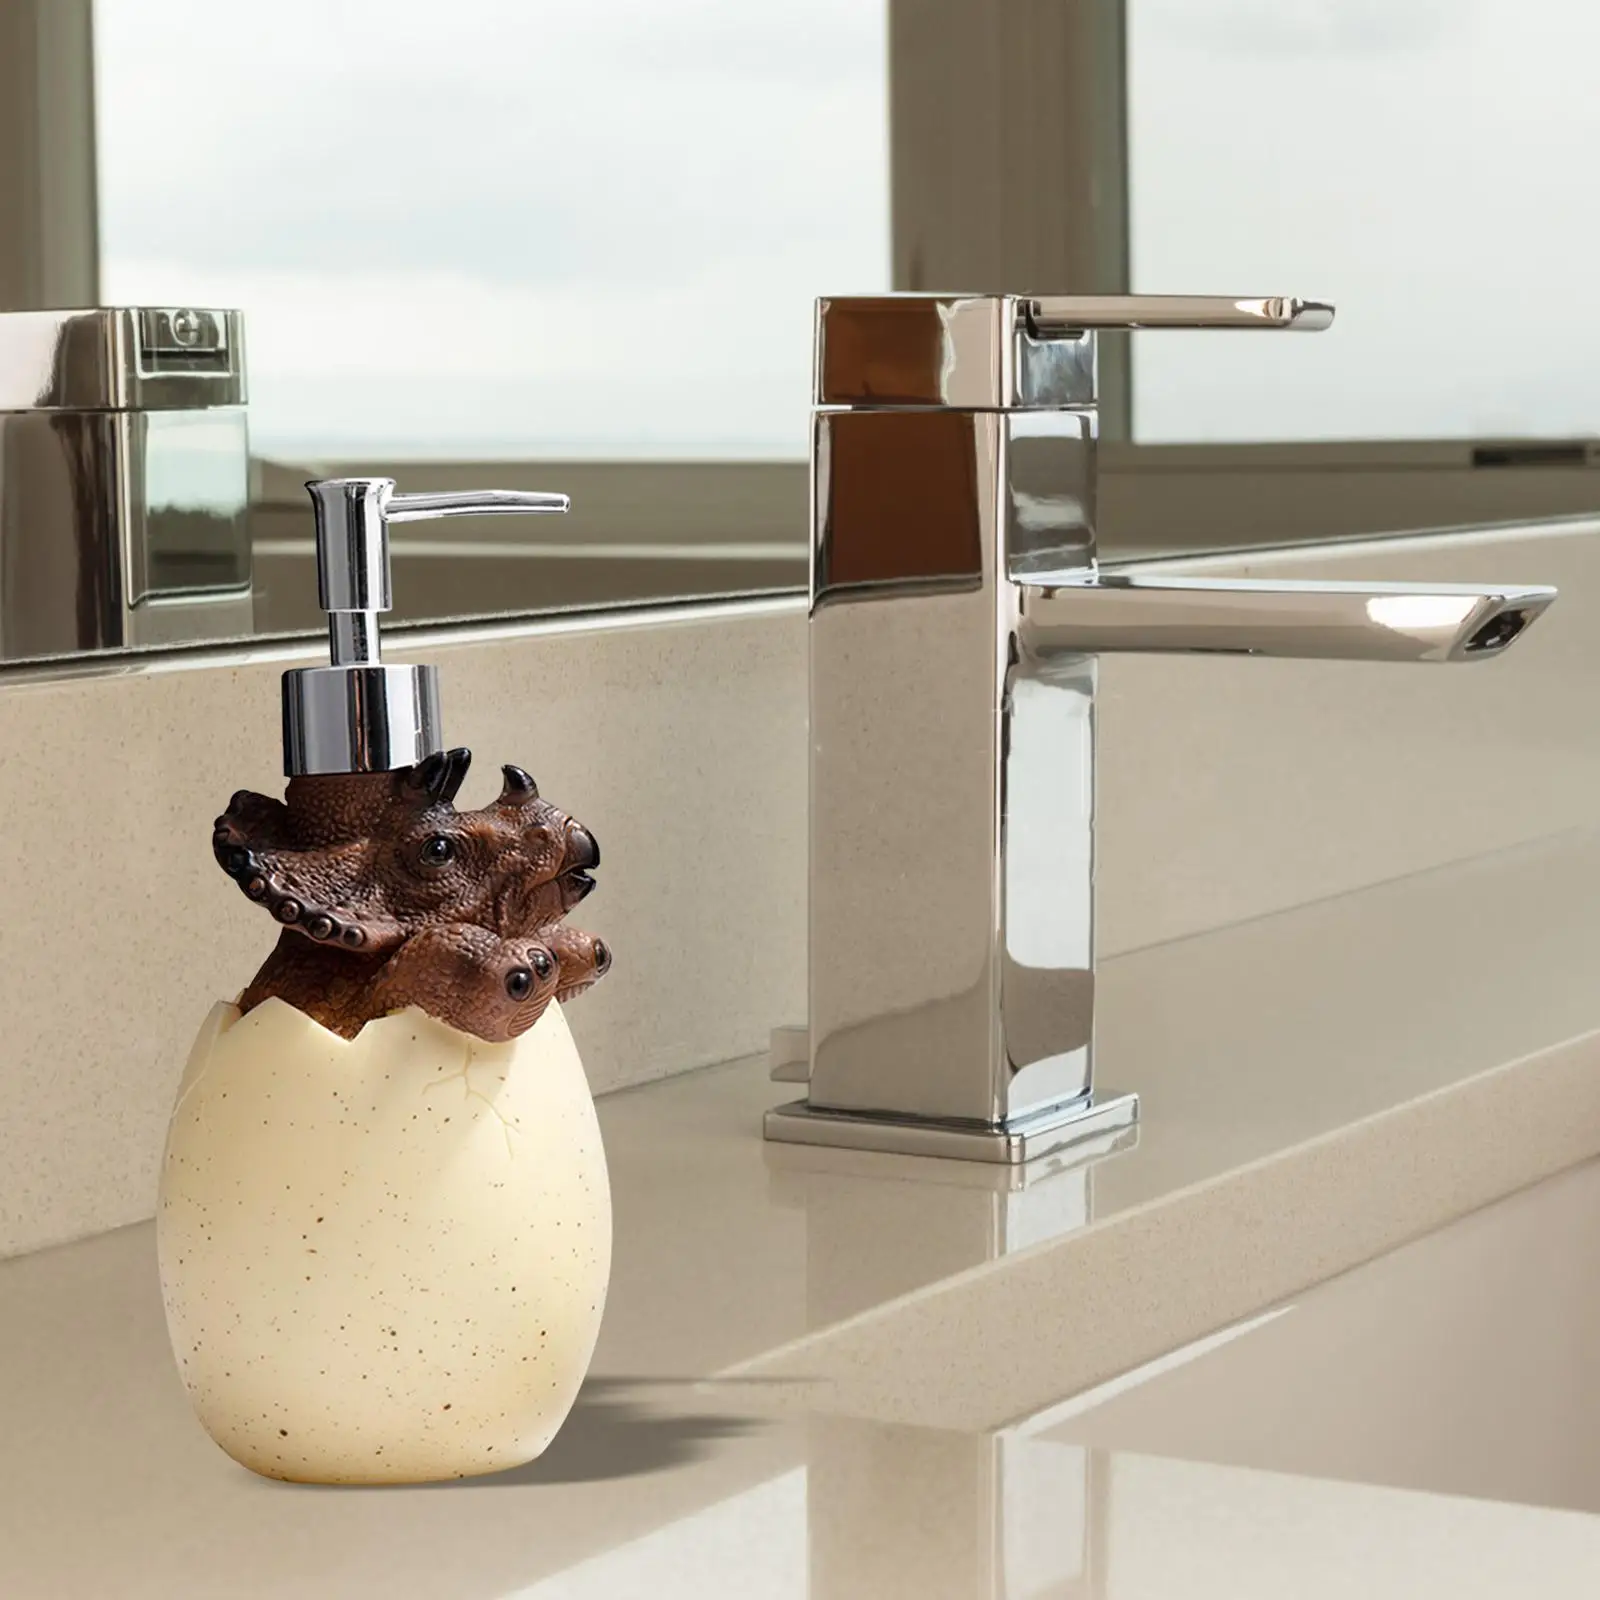 3D Dinosaur Scupture Soap Dispenser 560ml Bath Accessories for Decoration